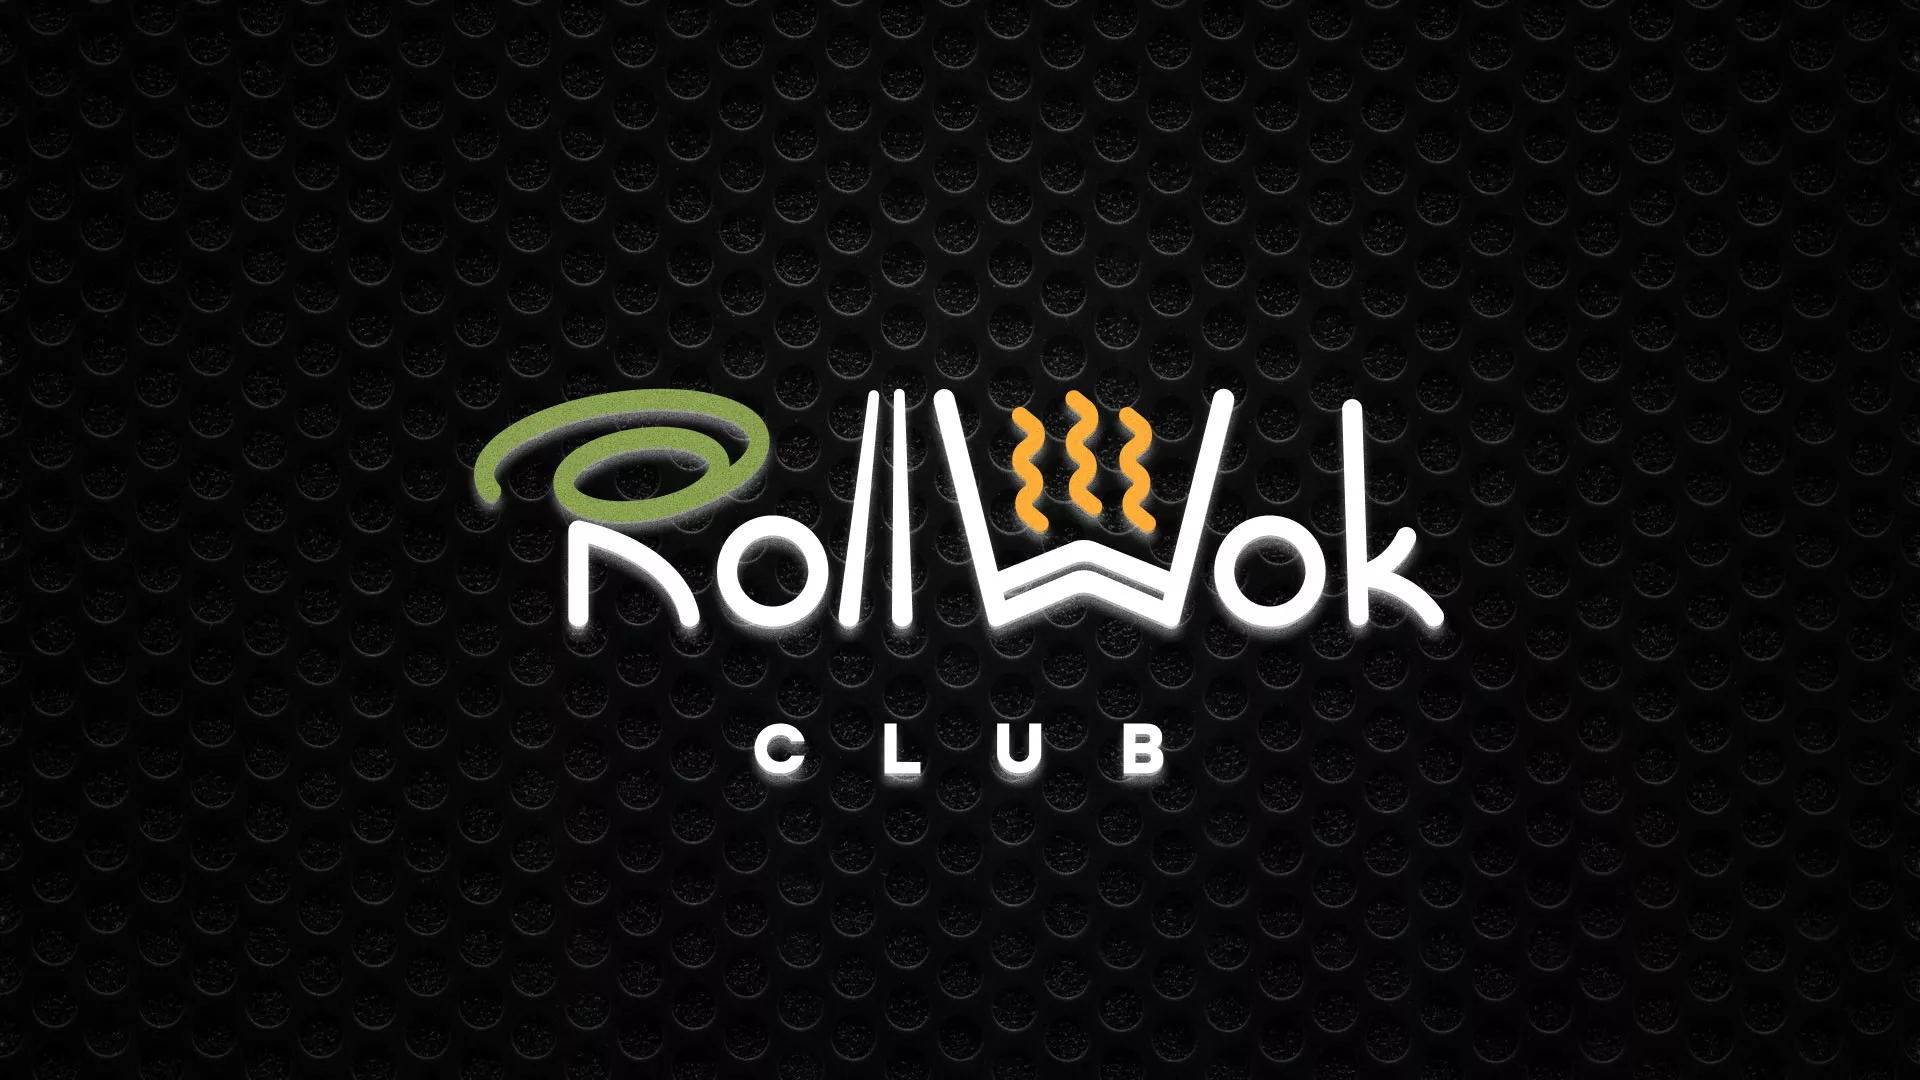 Брендирование торговых точек суши-бара «Roll Wok Club» в Челябинске